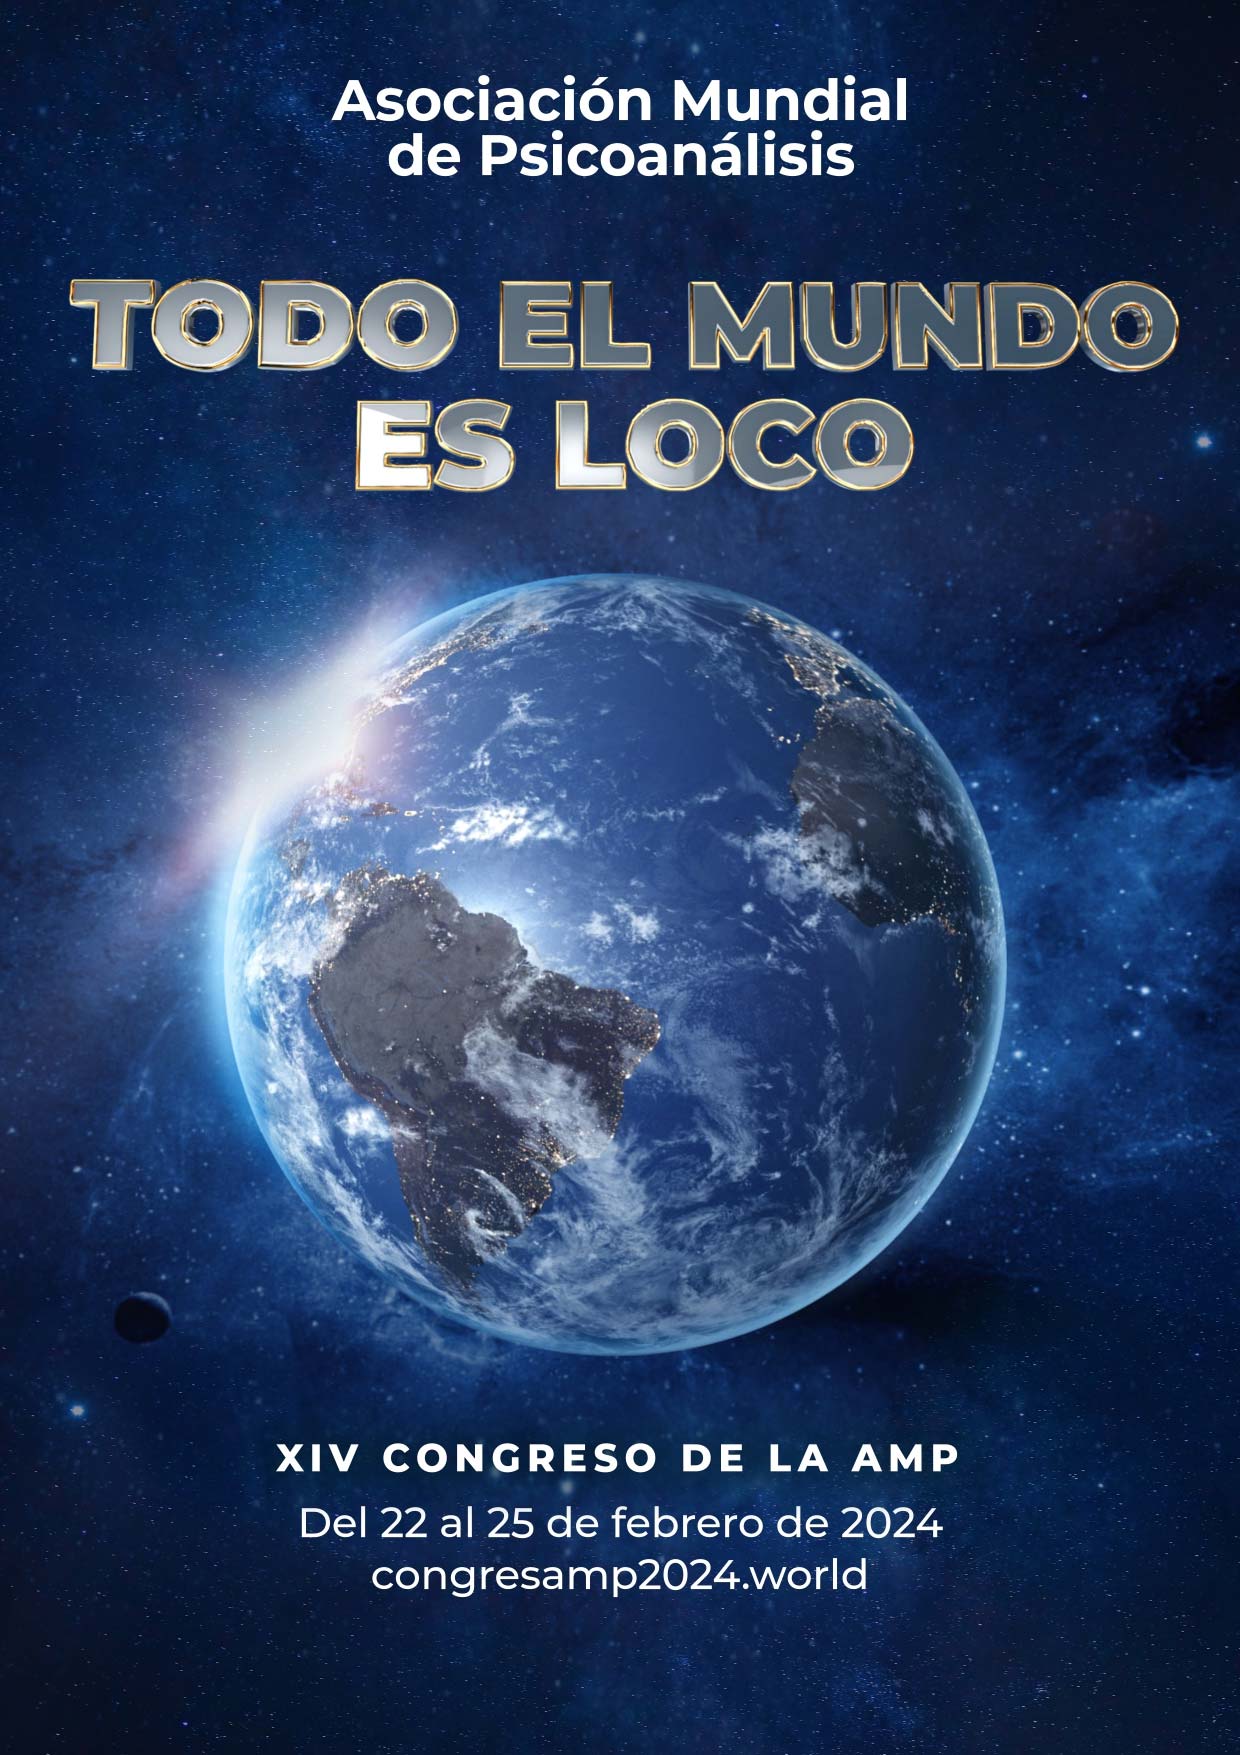 XIV Congreso de la AMP